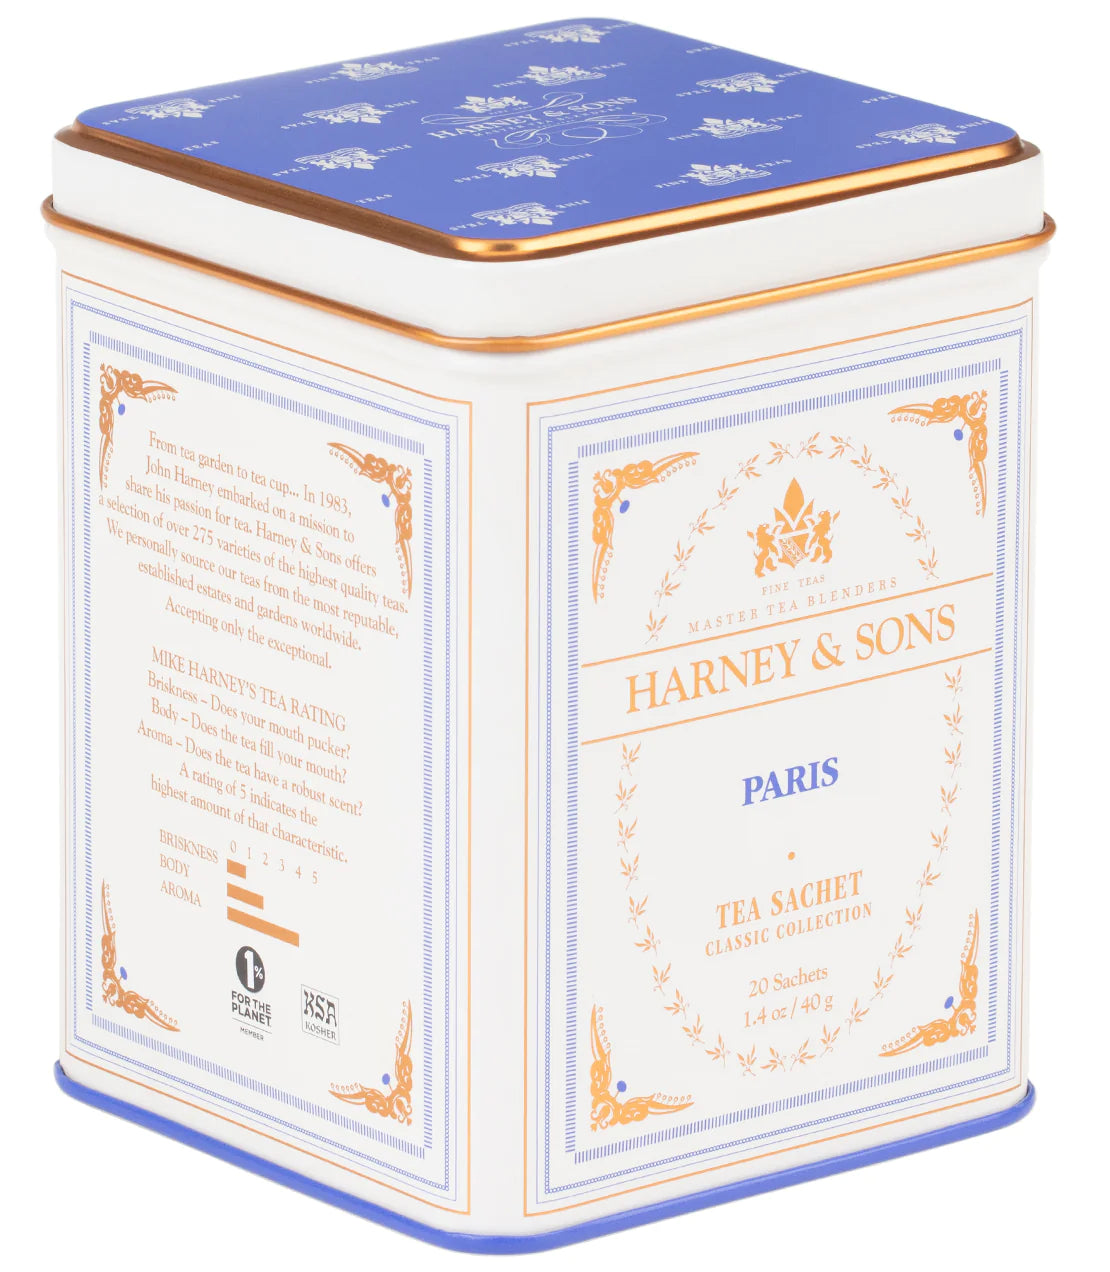 Paris Black Tea | Harney & Sons